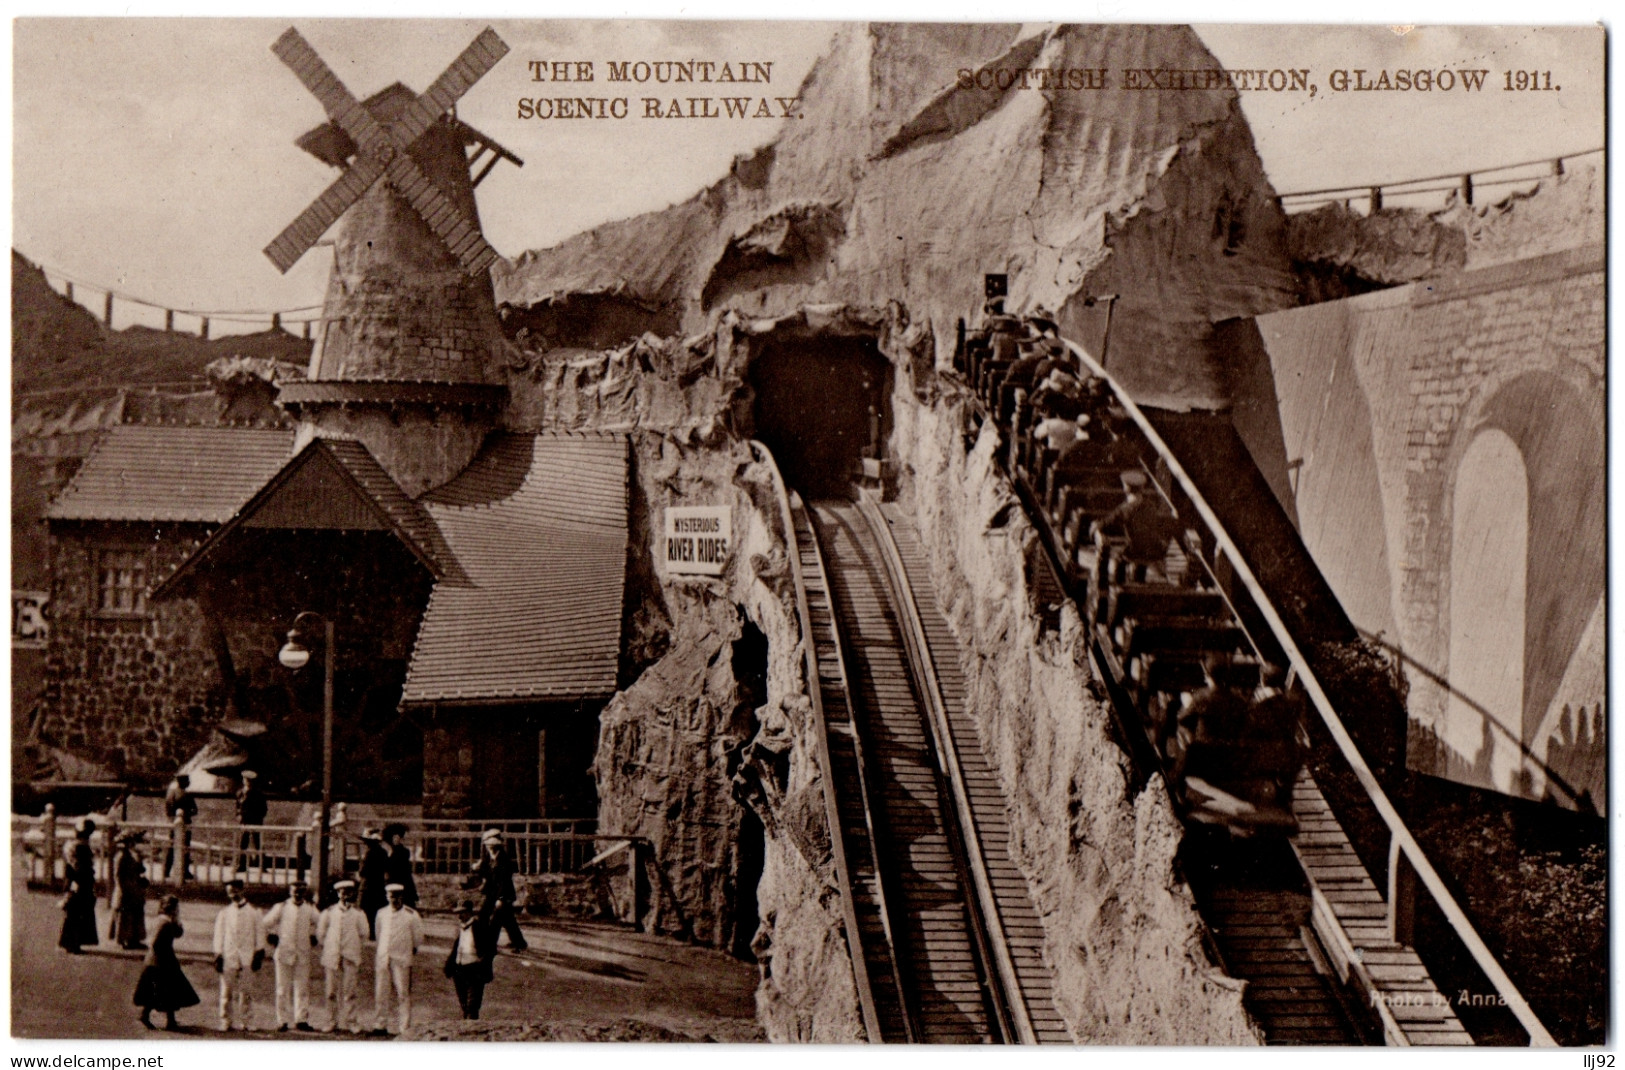 CPA UK - GLASGOW - The Mountain Scenic Railway - Scottisch Exhibition 1911 - Lanarkshire / Glasgow